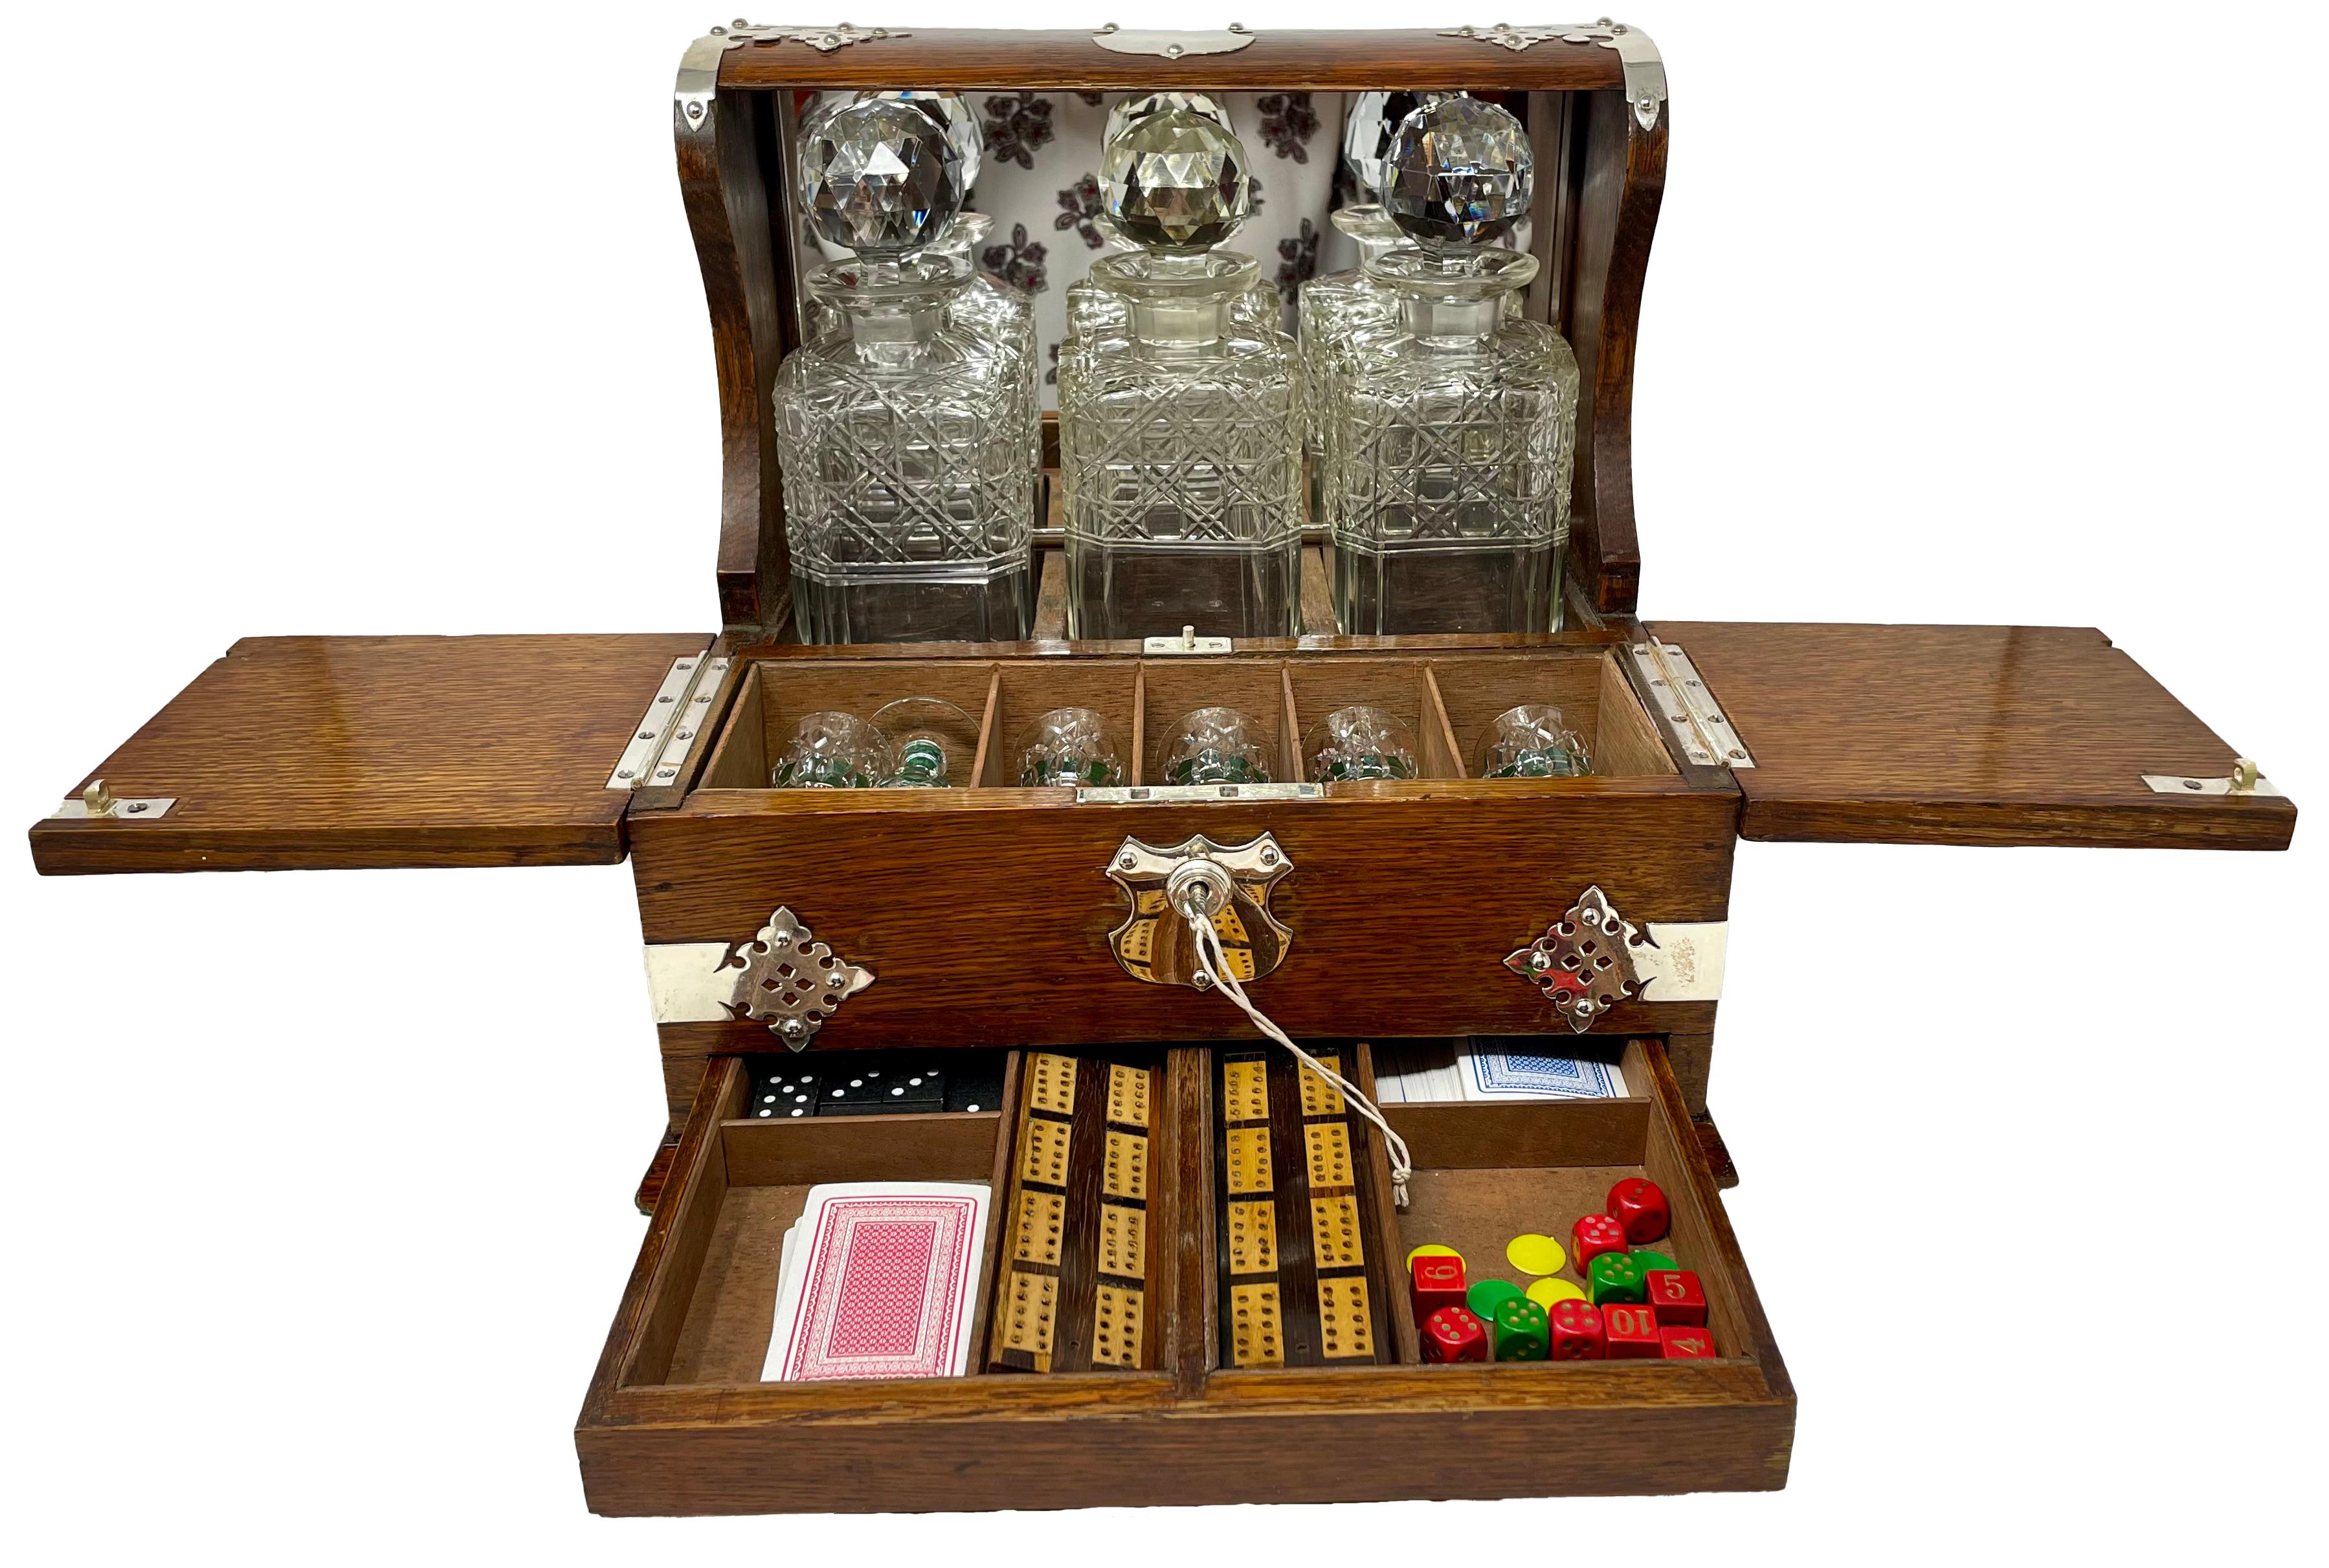 Ancienne boîte à compendium en chêne monté sur plaque d'argent avec 3 bouteilles de liqueur en cristal taillé, 6 cordiaux et plusieurs jeux.
Fermé : 13,25